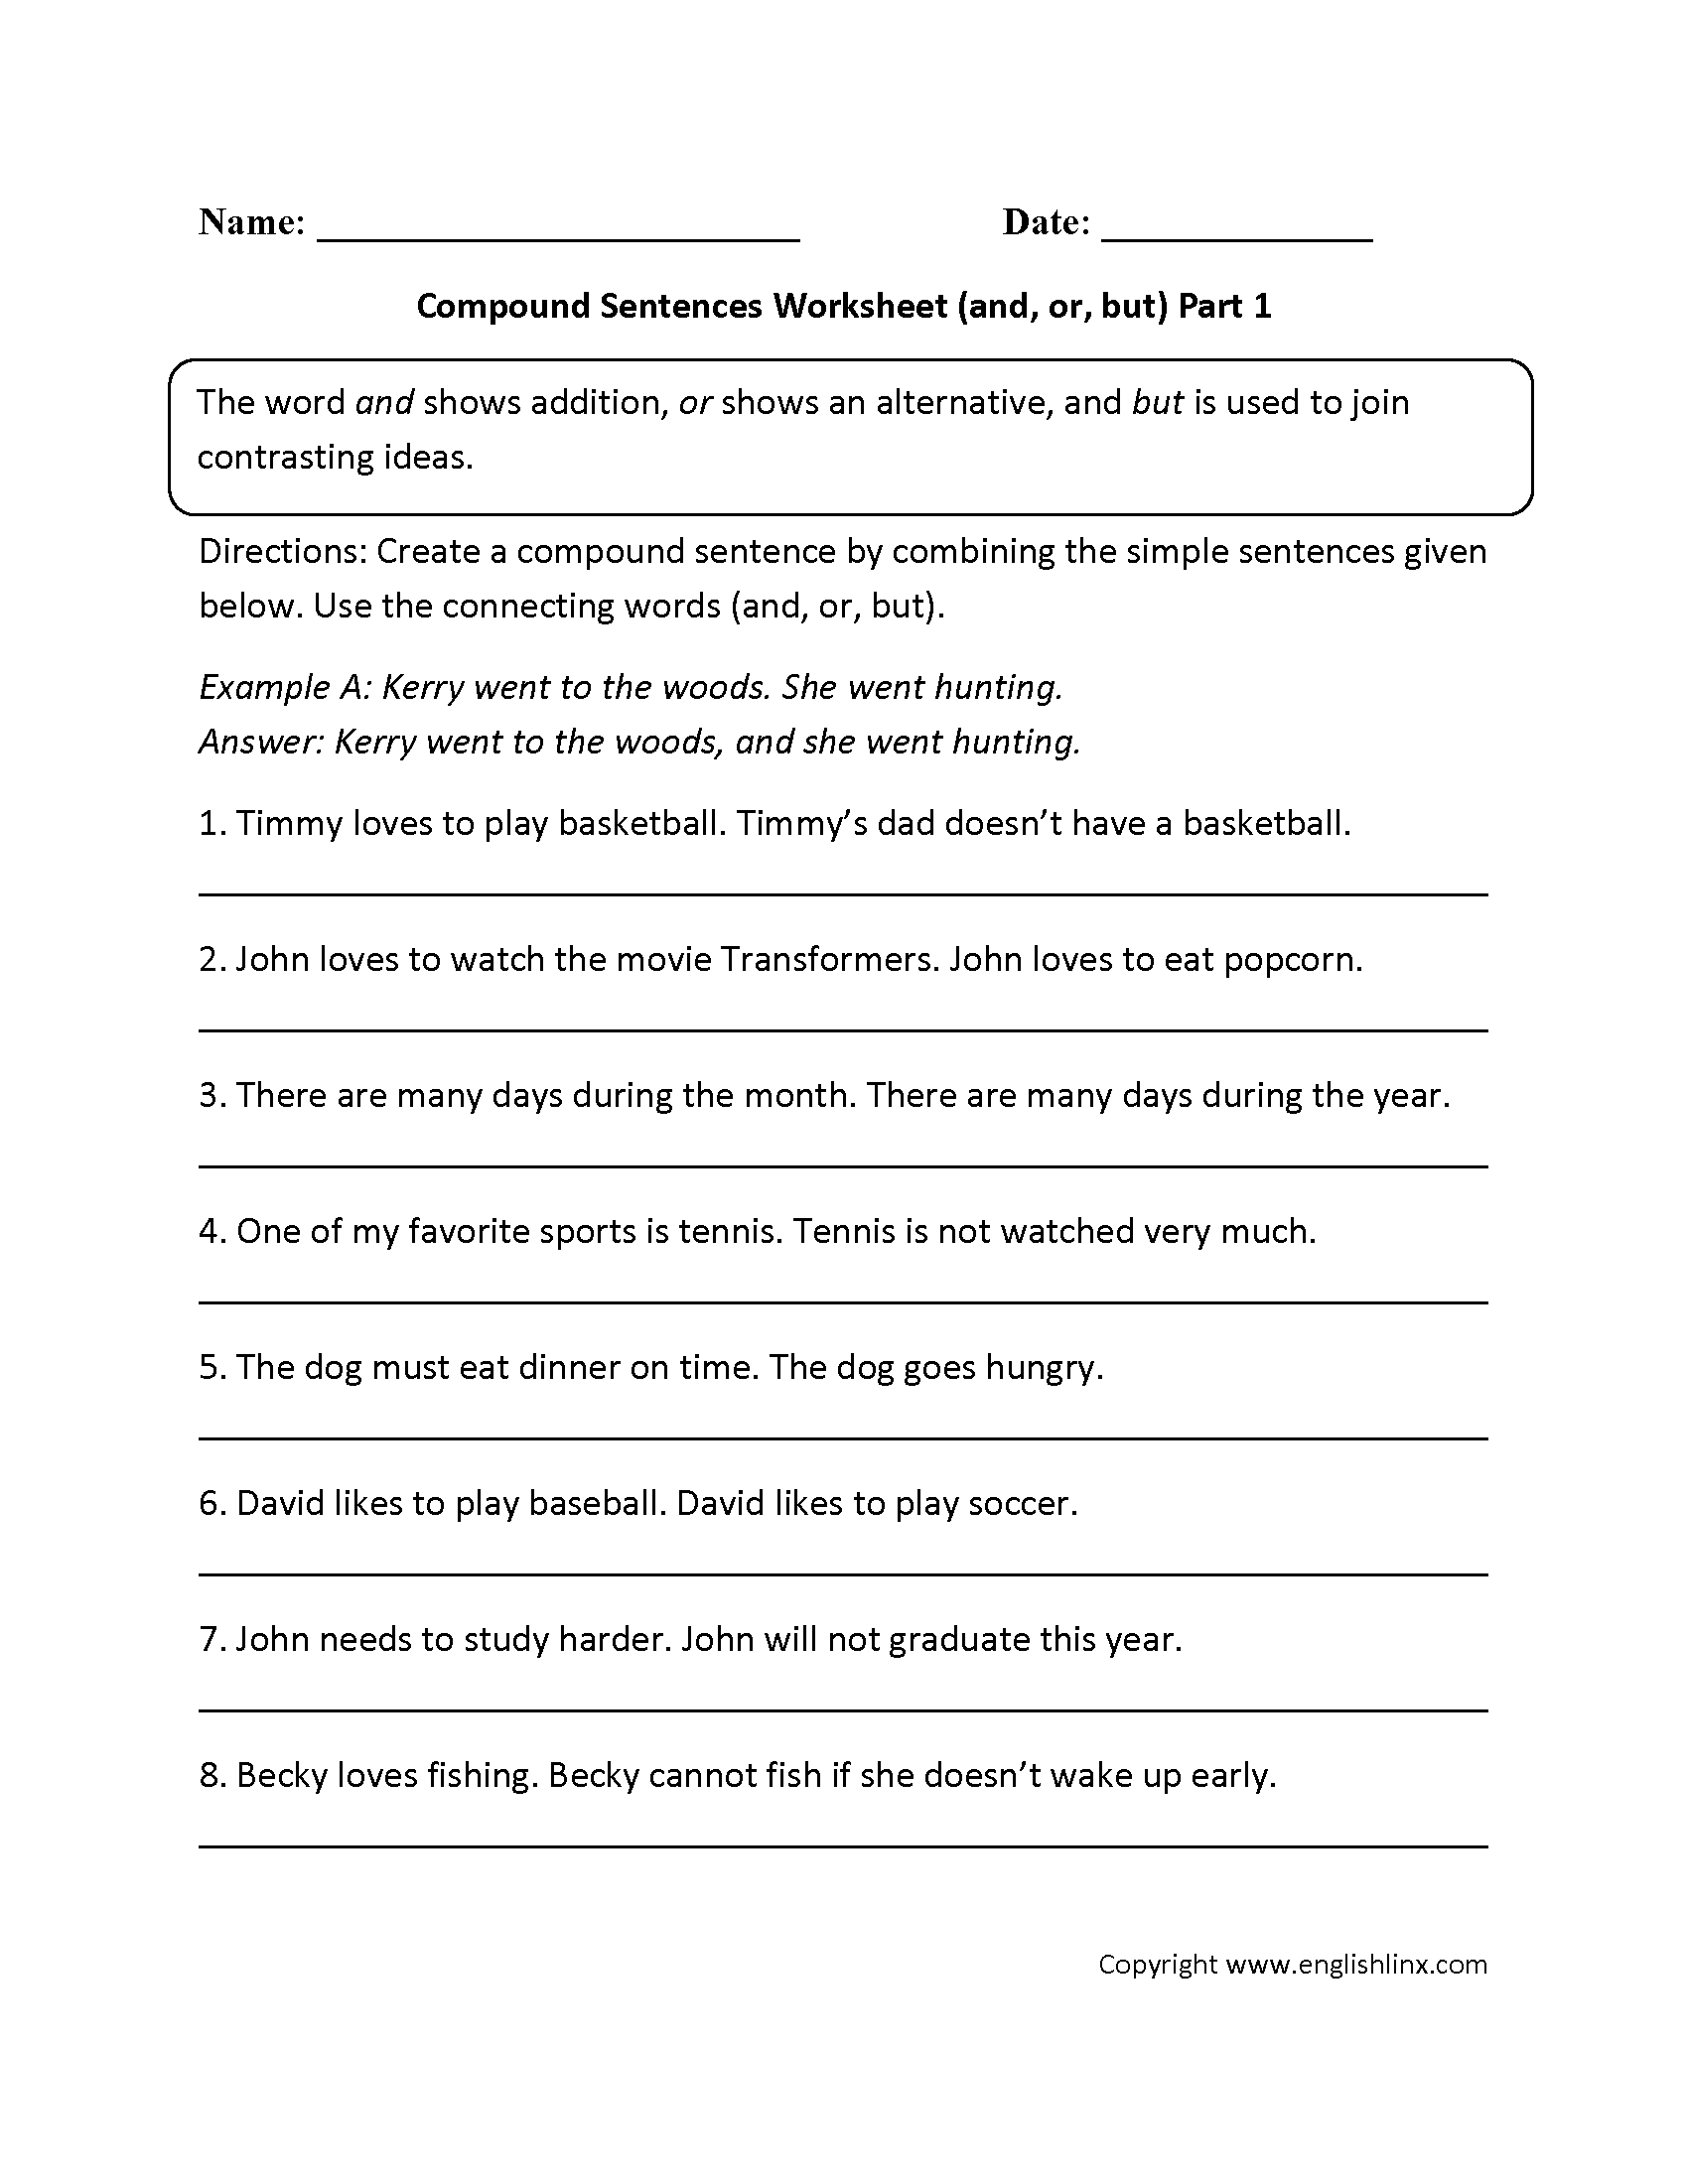 creating-compound-sentences-worksheets-99worksheets